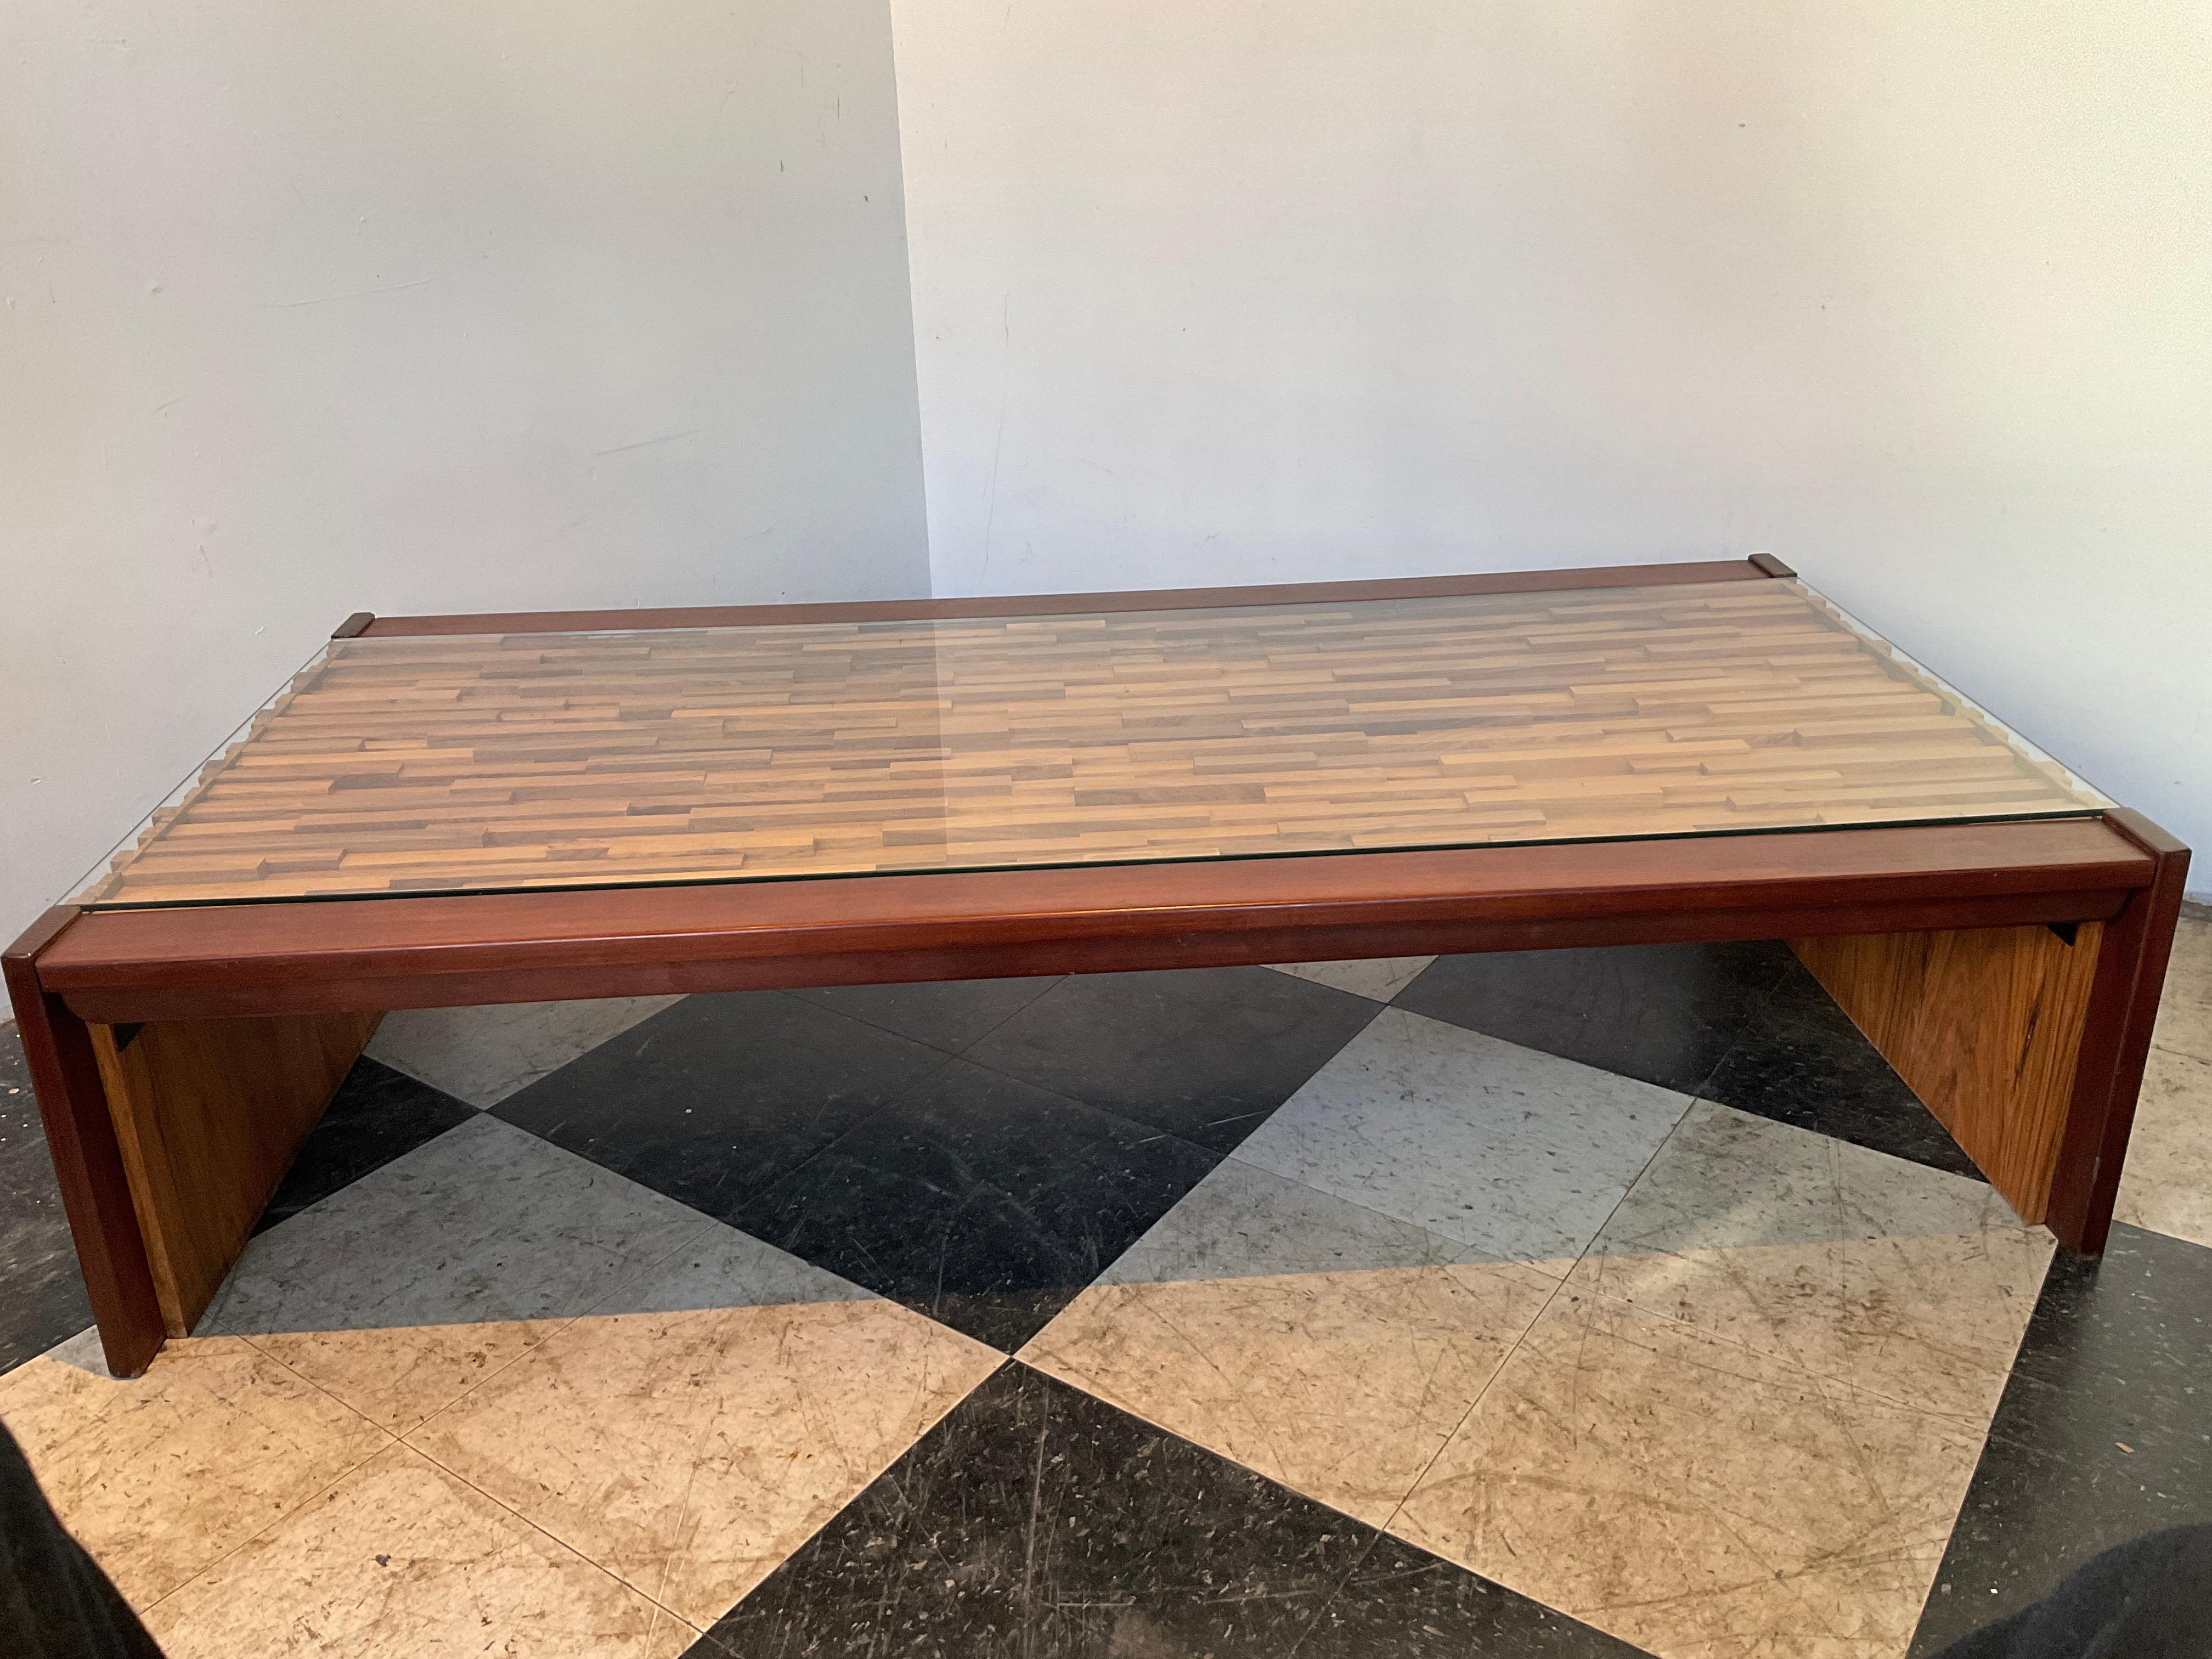 Table basse en bois de Perceval Lafer des années 1980. Les côtés sont rabattables.
Dessus en verre